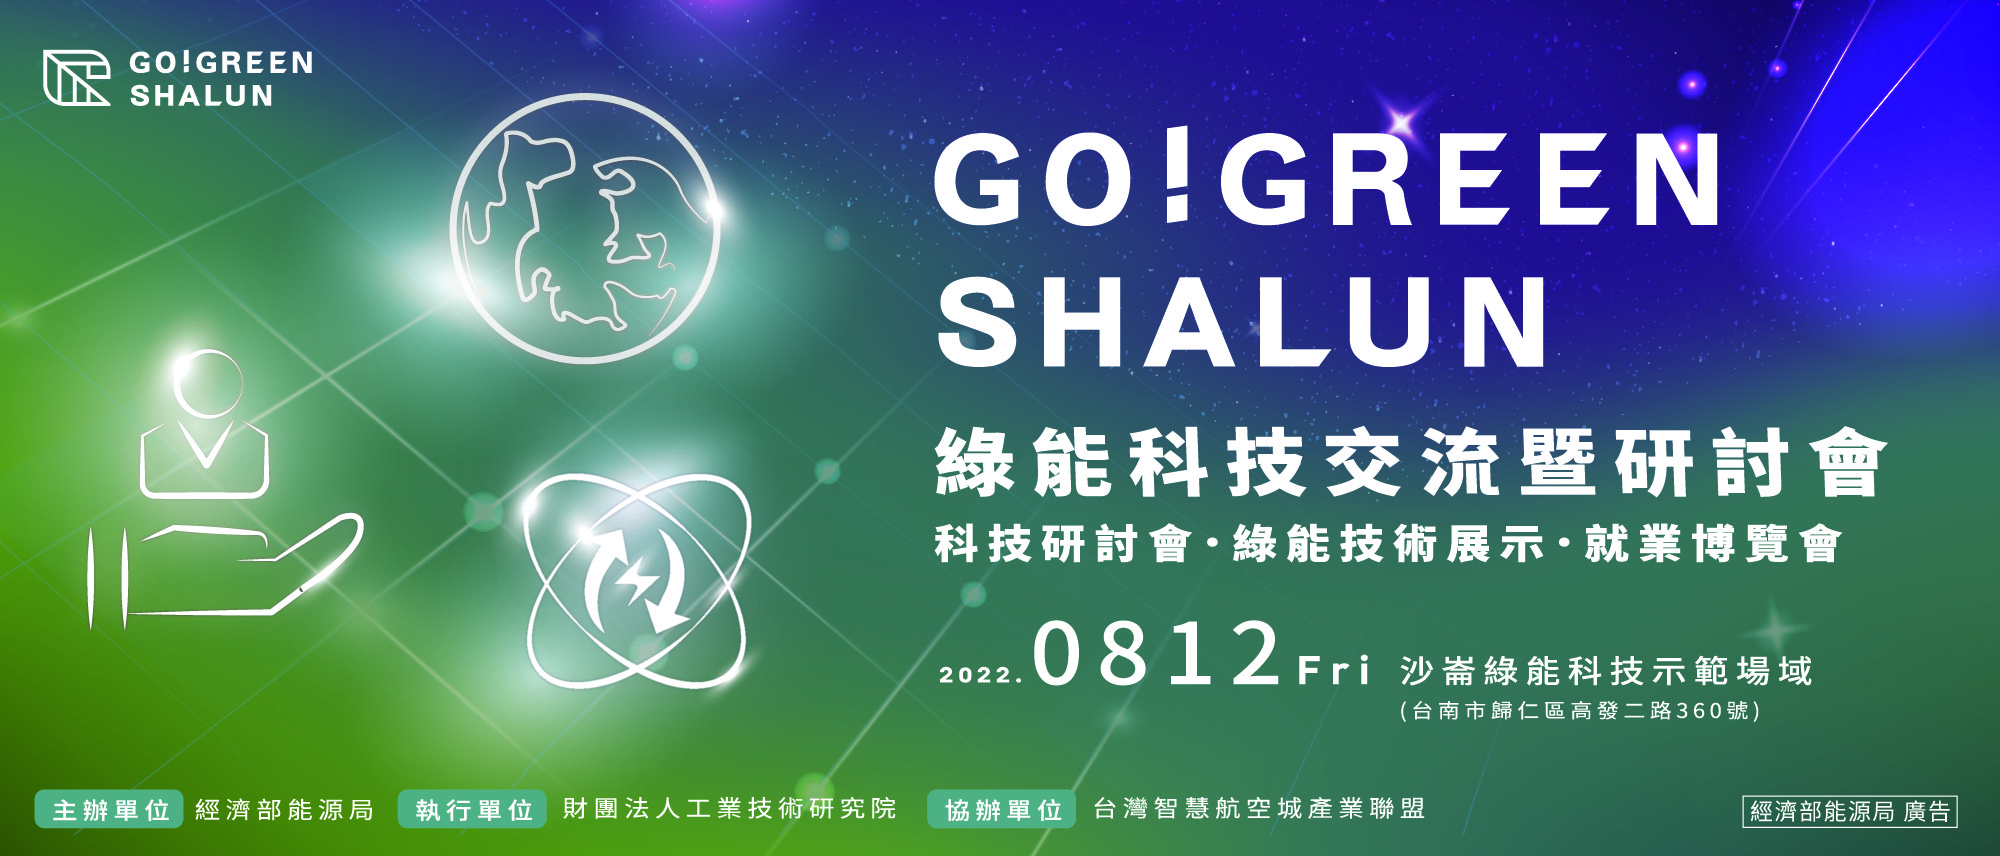 【活動通知】8/12(五) GO! GREEN SHALUN綠能科技交流暨研討會，敬邀參與